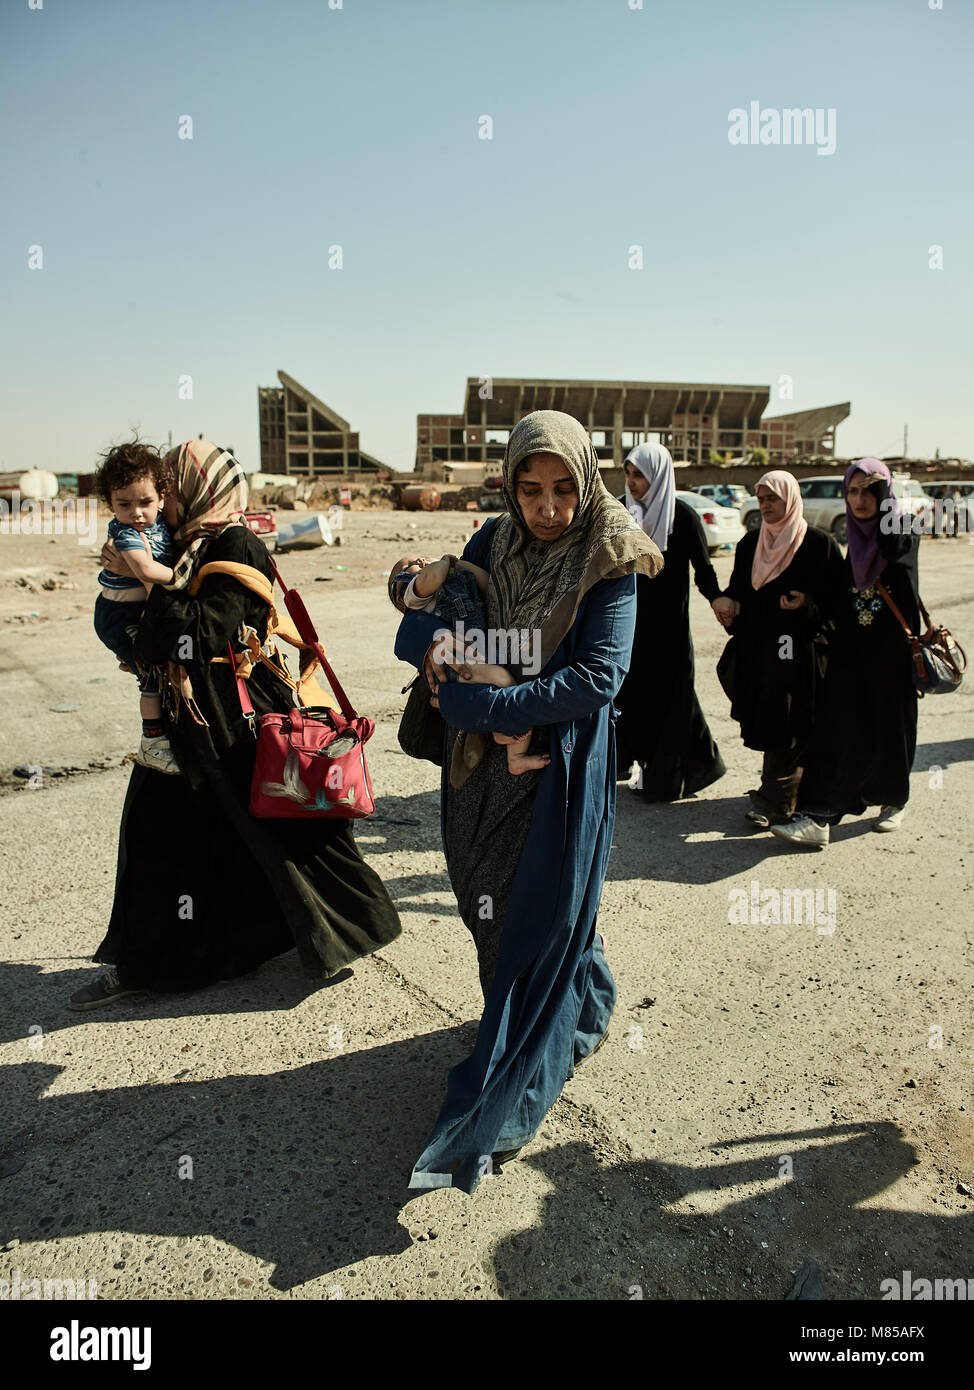 Zivilisten fliehen in der alten Stadt von Mosul kämpfen. Die Stadt Mosul im Nordirak hat unter islamischen Staat militanten wurde für 3 Jahre, seit Juni 2014. Im Juli 2017 die Streitkräfte der Koalition geführt von der irakischen Armee hat endlich befreit die Stadt aus der Hand von Terroristen. Stockfoto